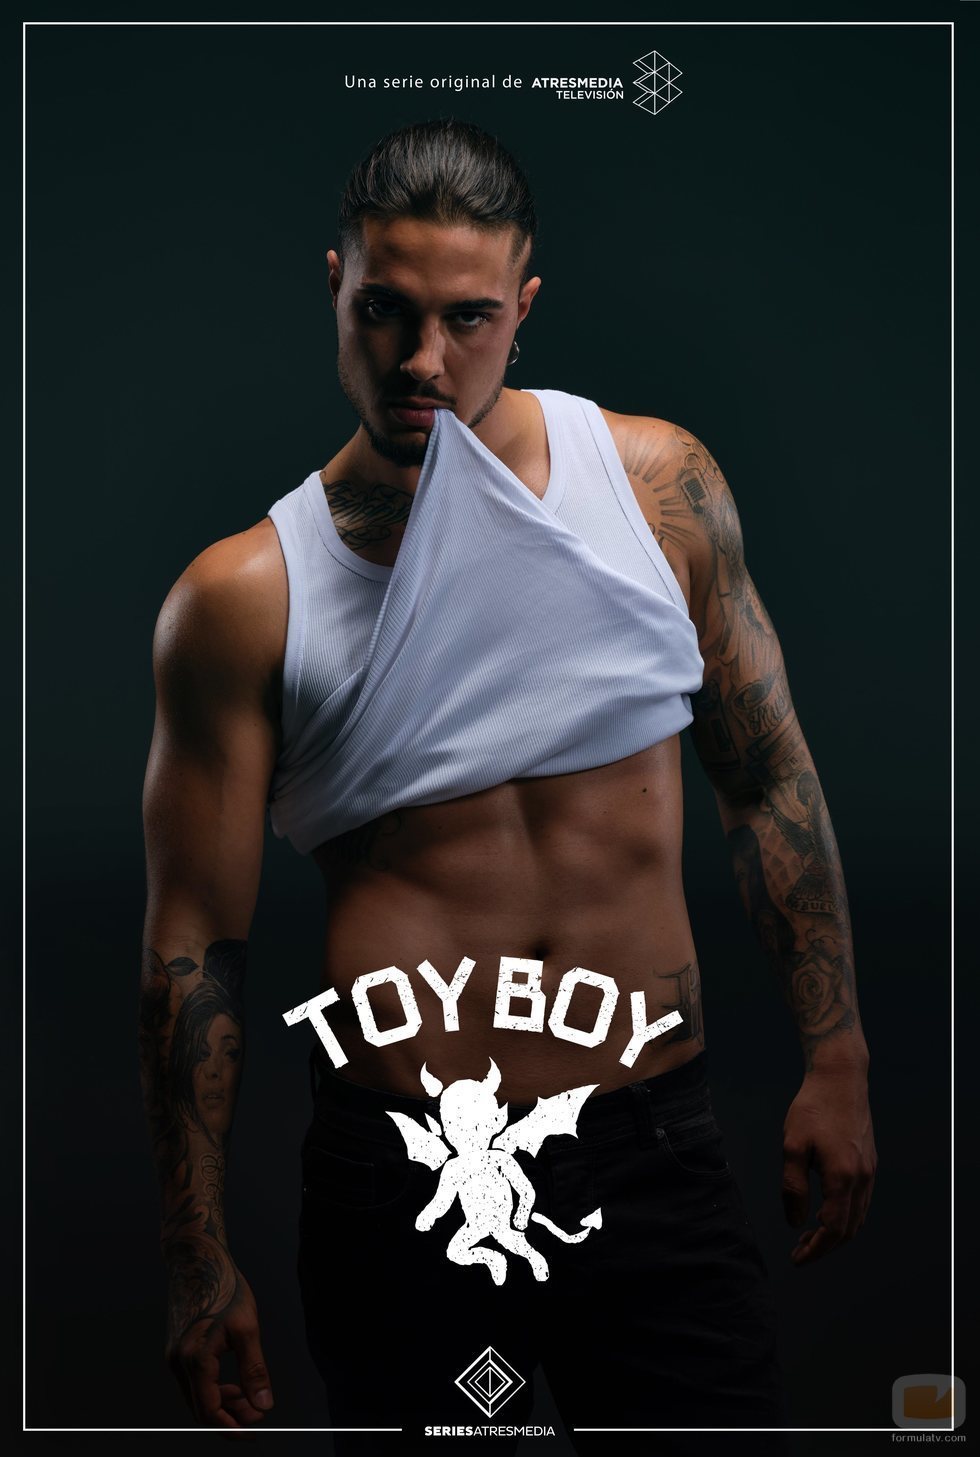 Jairo (Carlo Costanzia), en un póster promocional de 'Toy Boy'